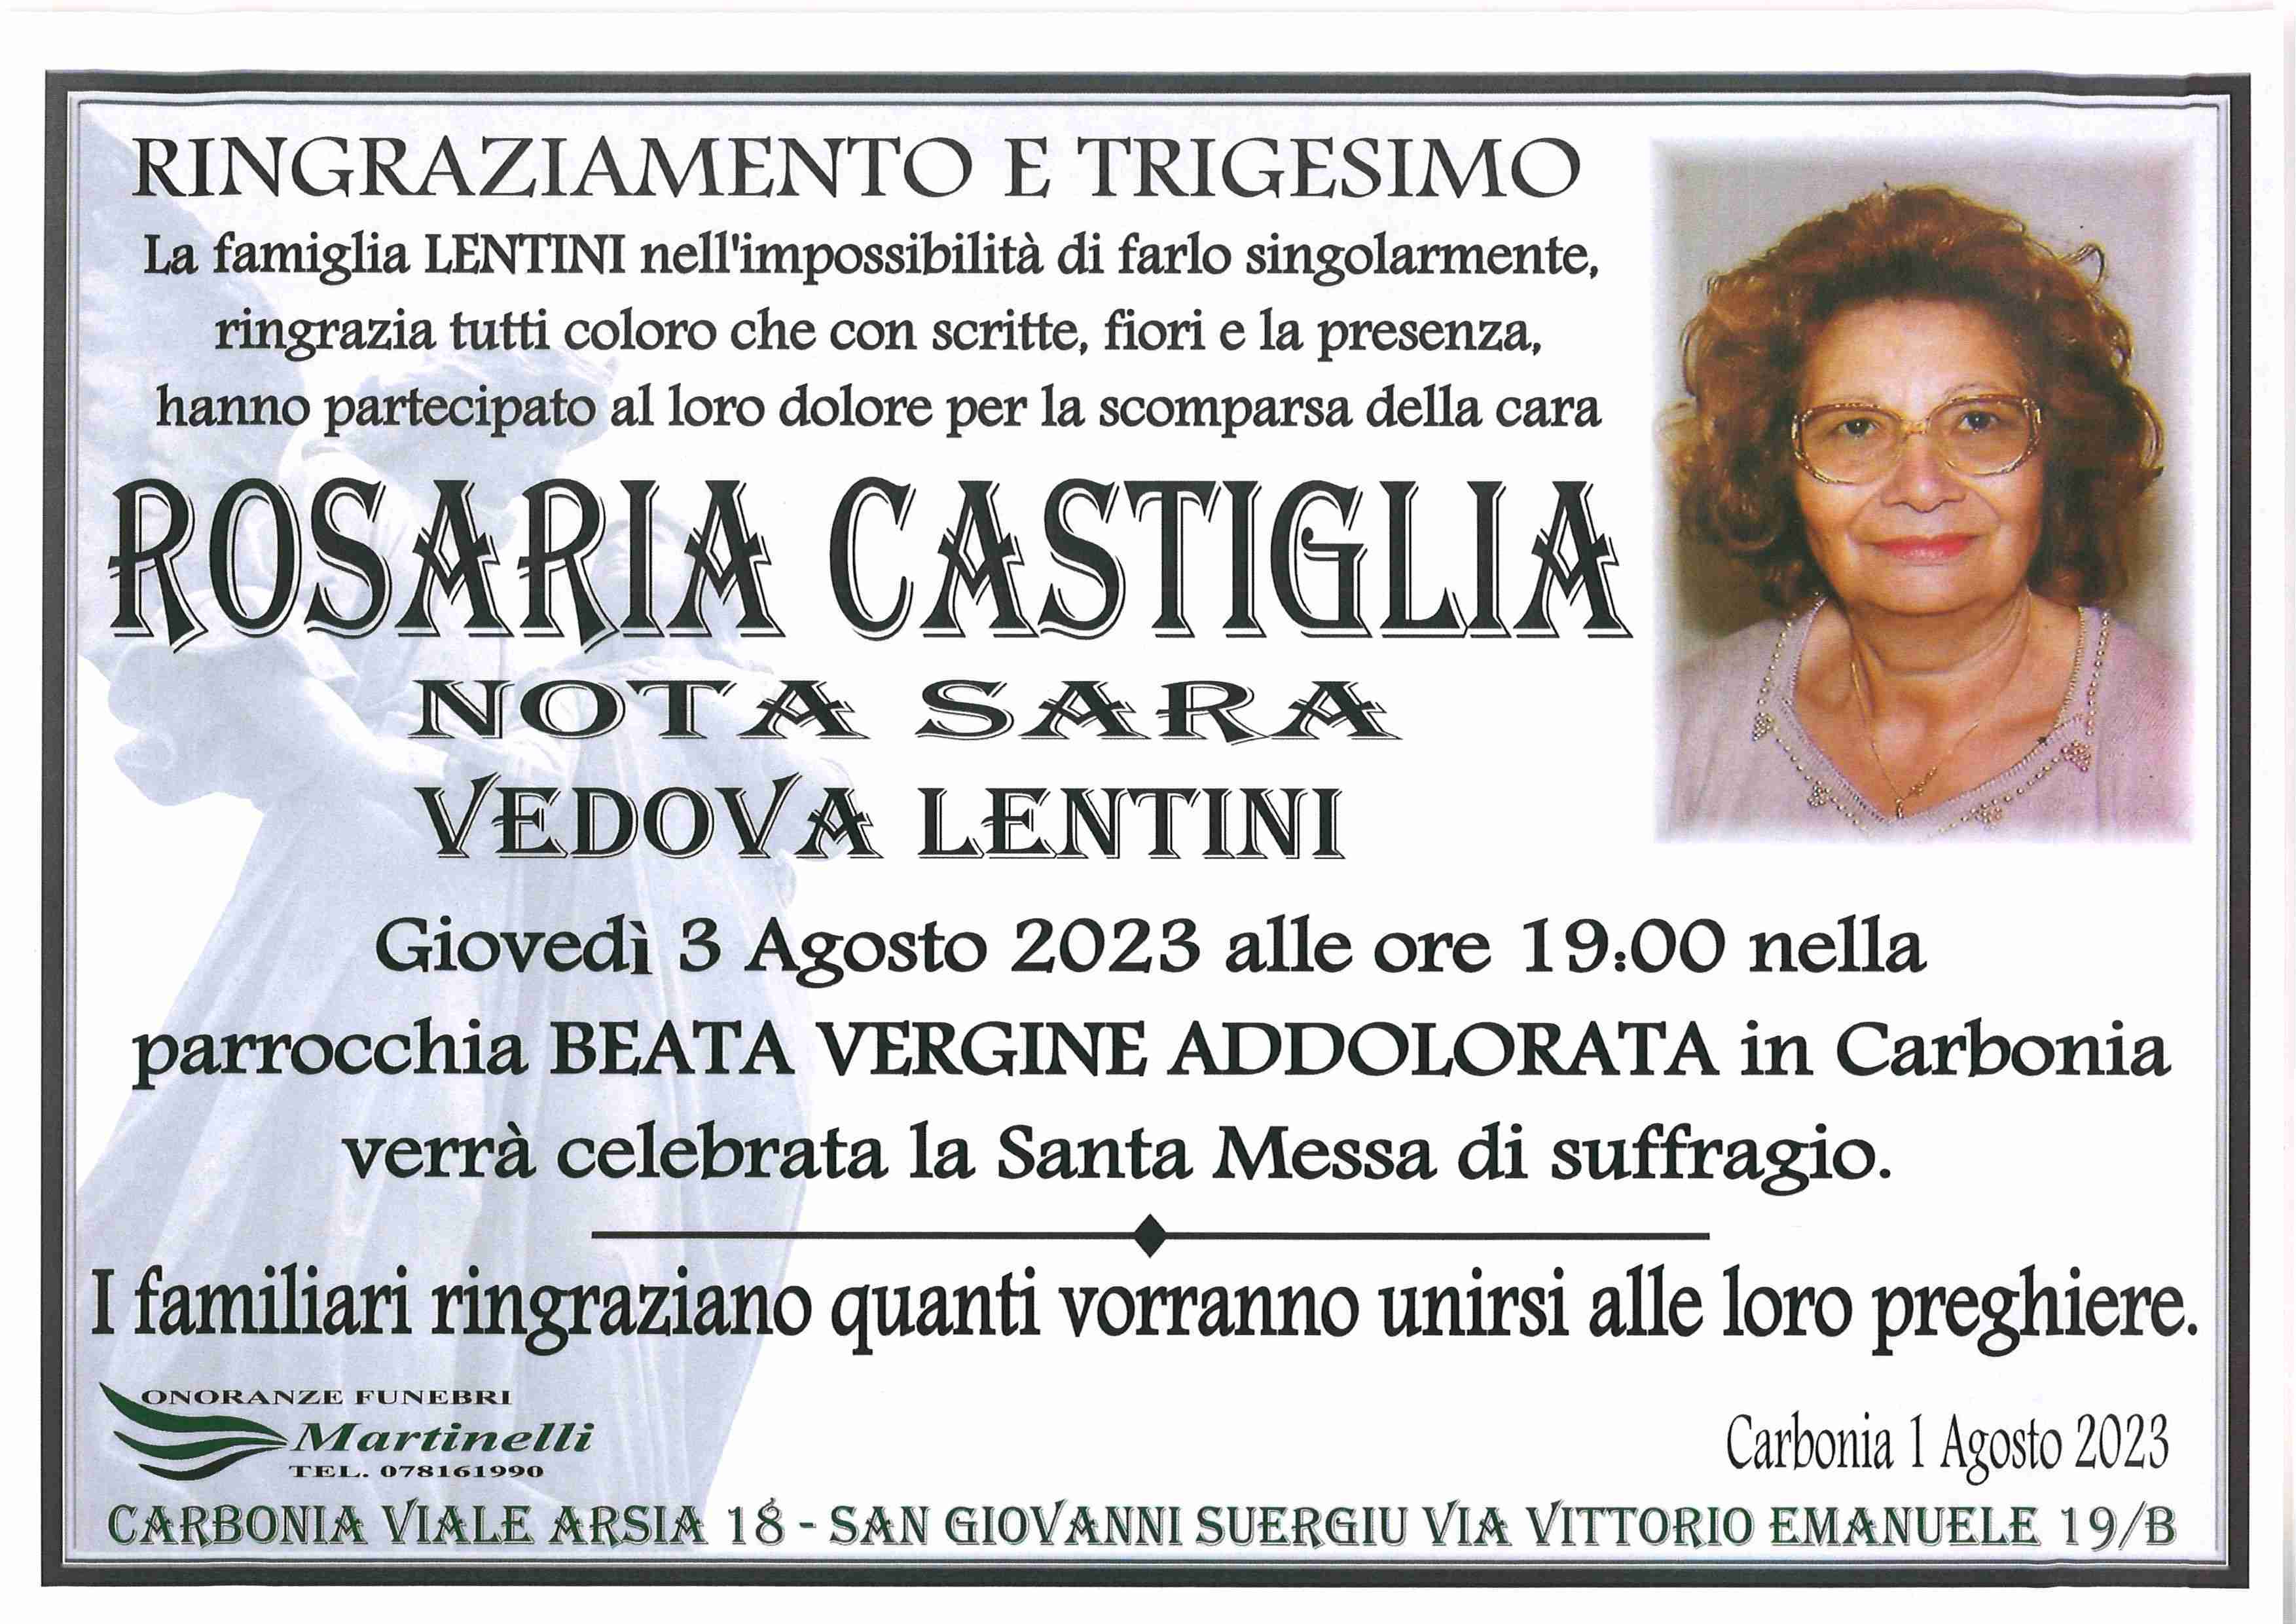 Rosaria Castiglia